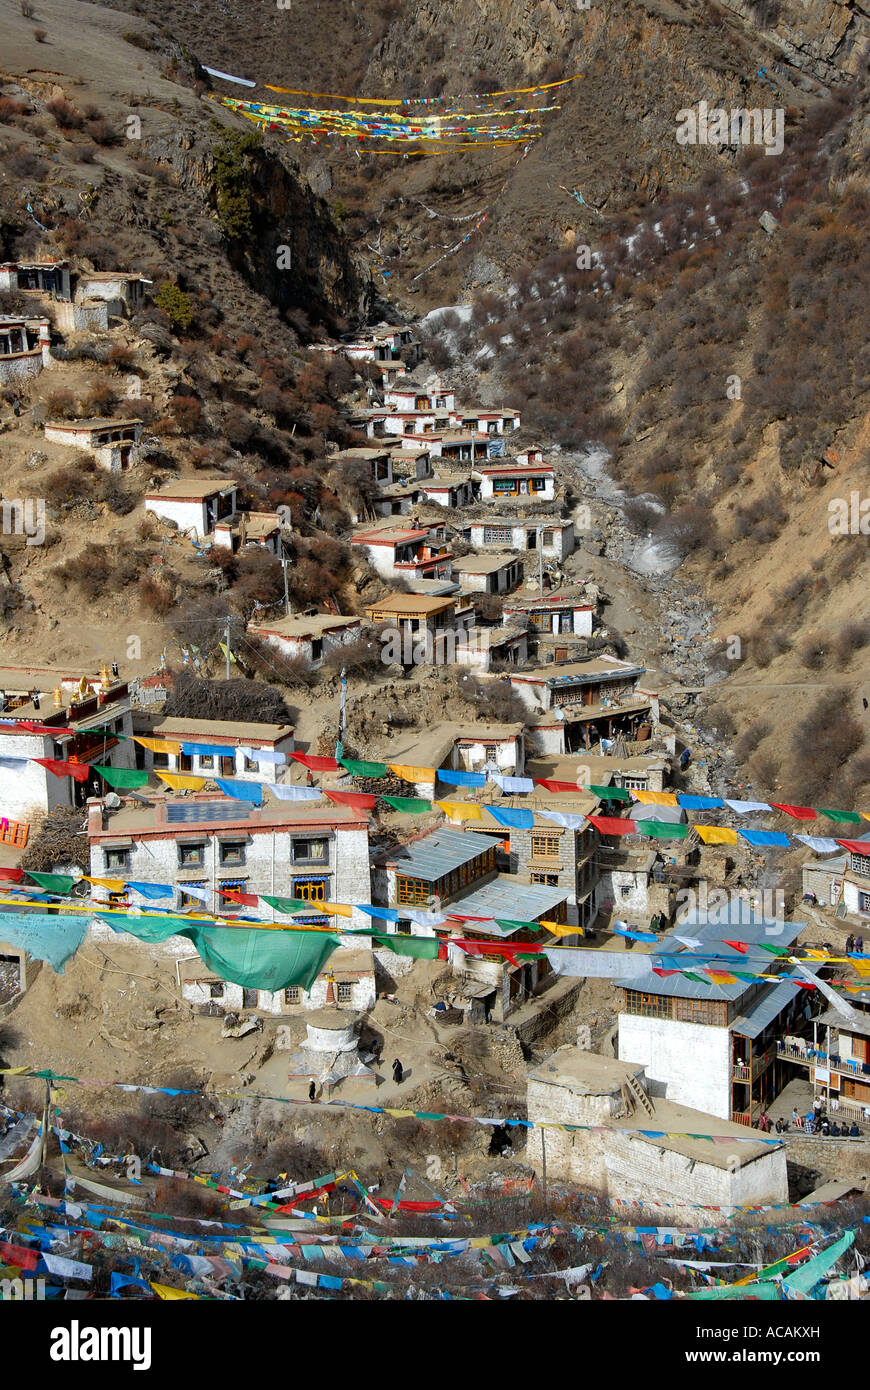 Le bouddhisme tibétain vue d'Tidrum Tibet Chine antiq Banque D'Images